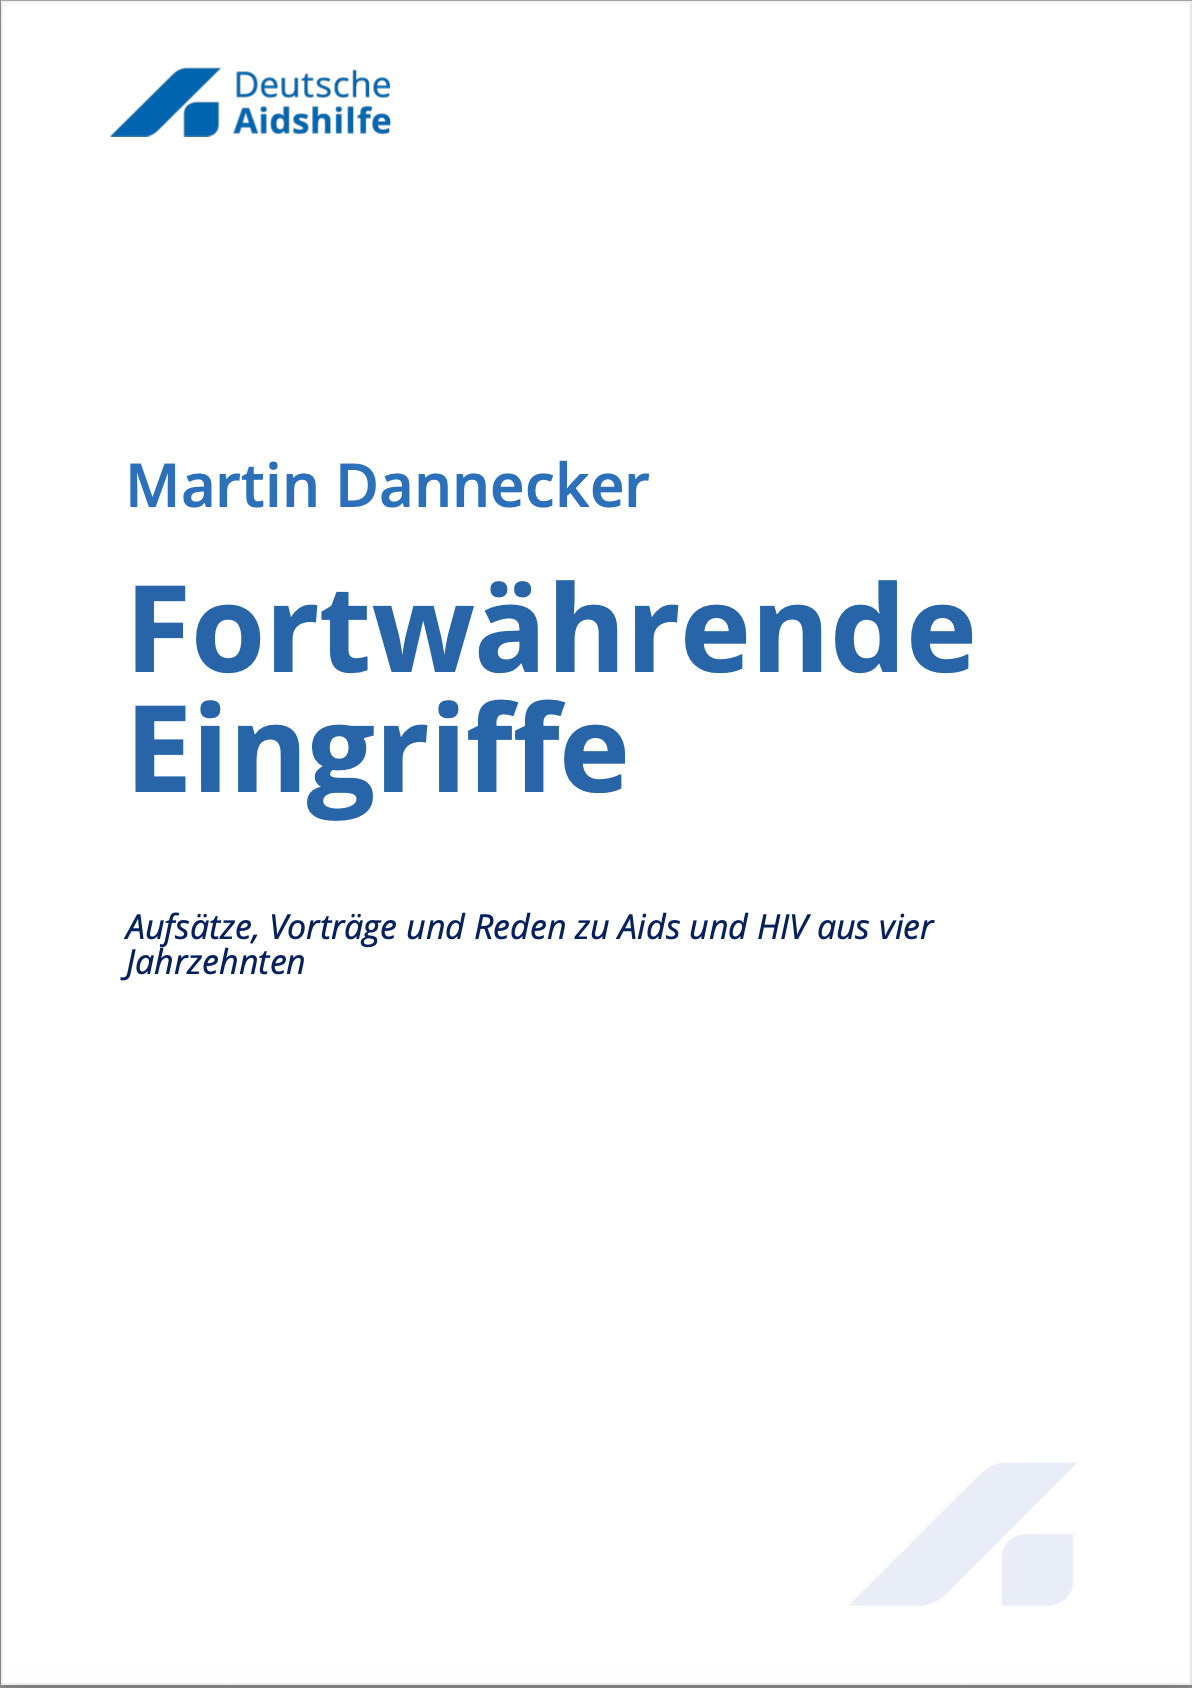 Martin Dannecker: Fortwährende Eingriffe (EBook, Deutsch language, 2019, Deutsche Aidshilfe)